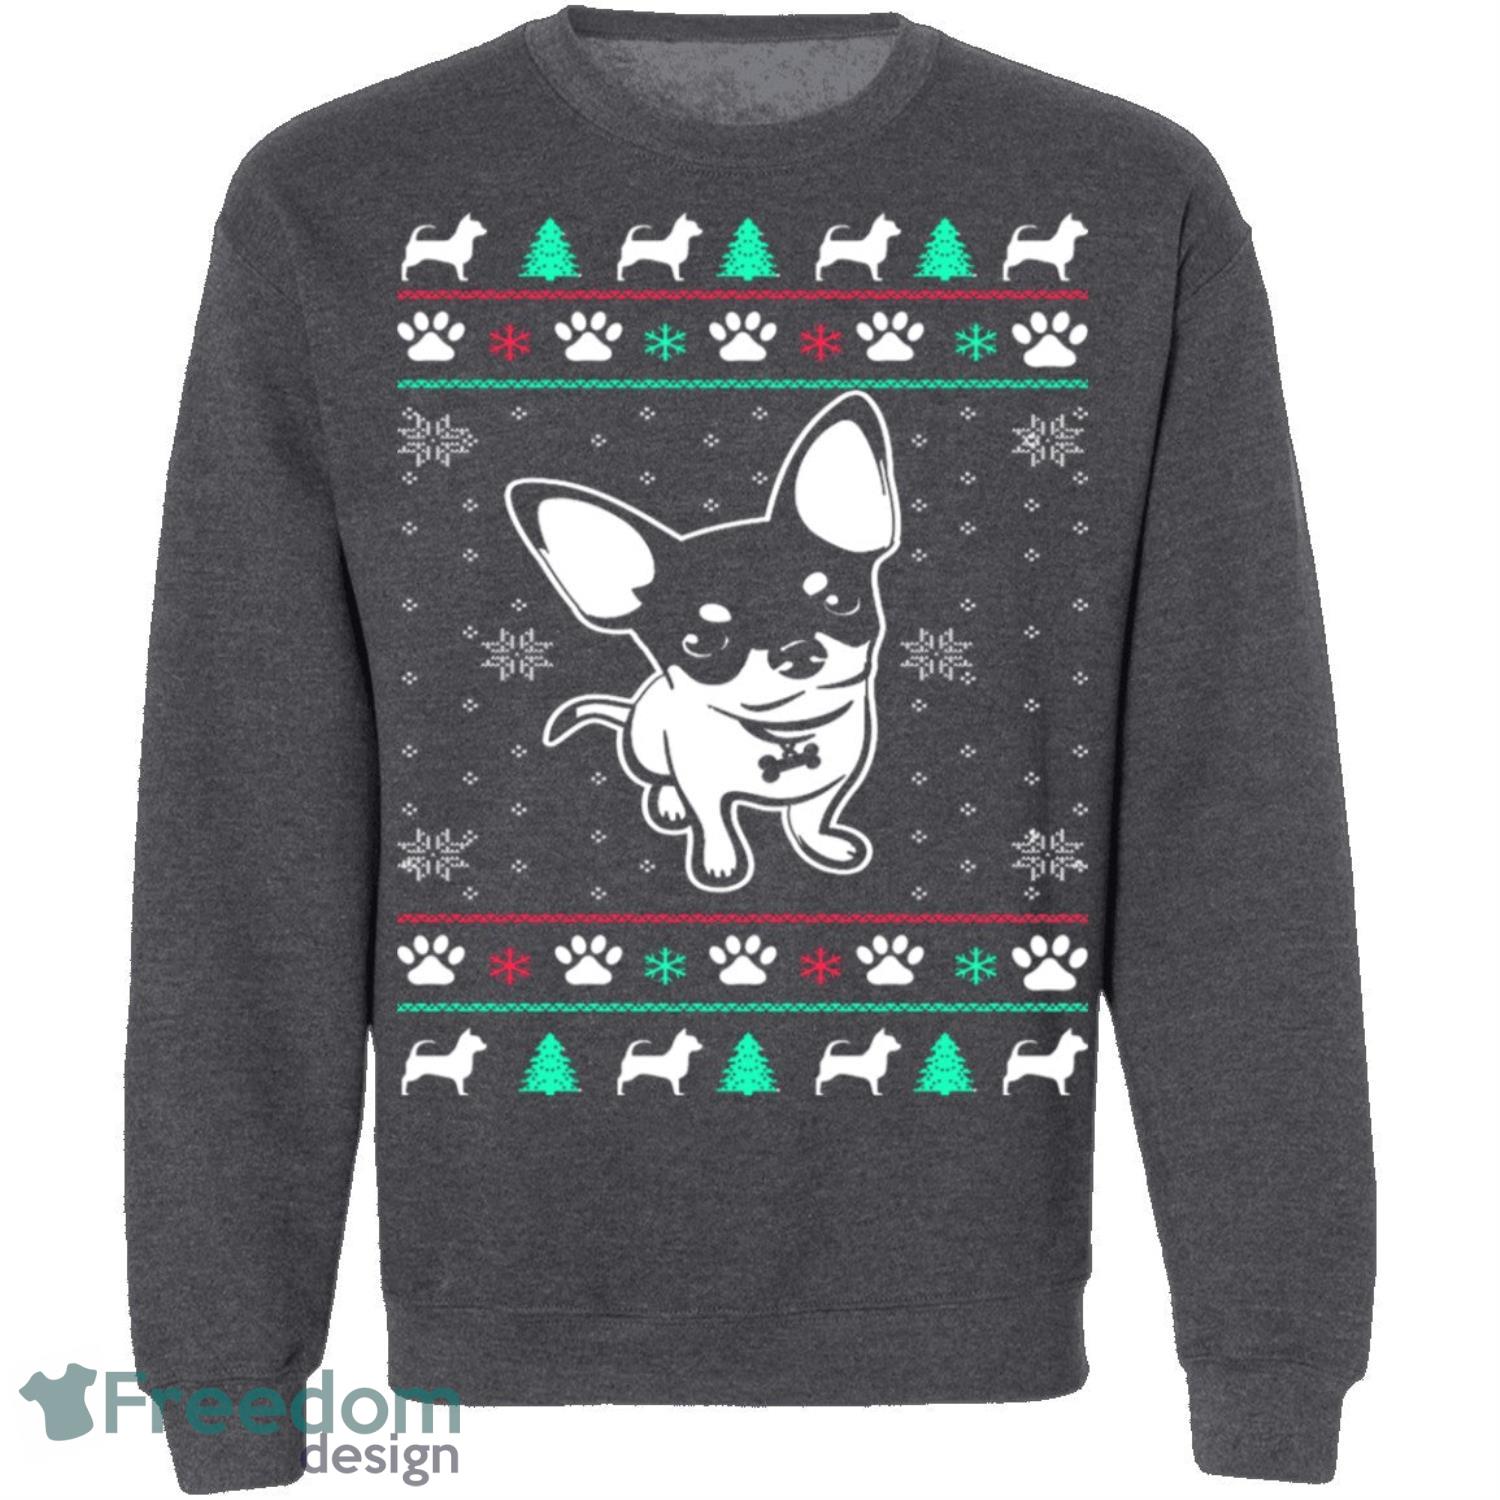 Chihuahua Knitting Pattern Ugly Christmas Sweatshirt - chihuahua-knitting-pattern-ugly-christmas-sweatshirt-2